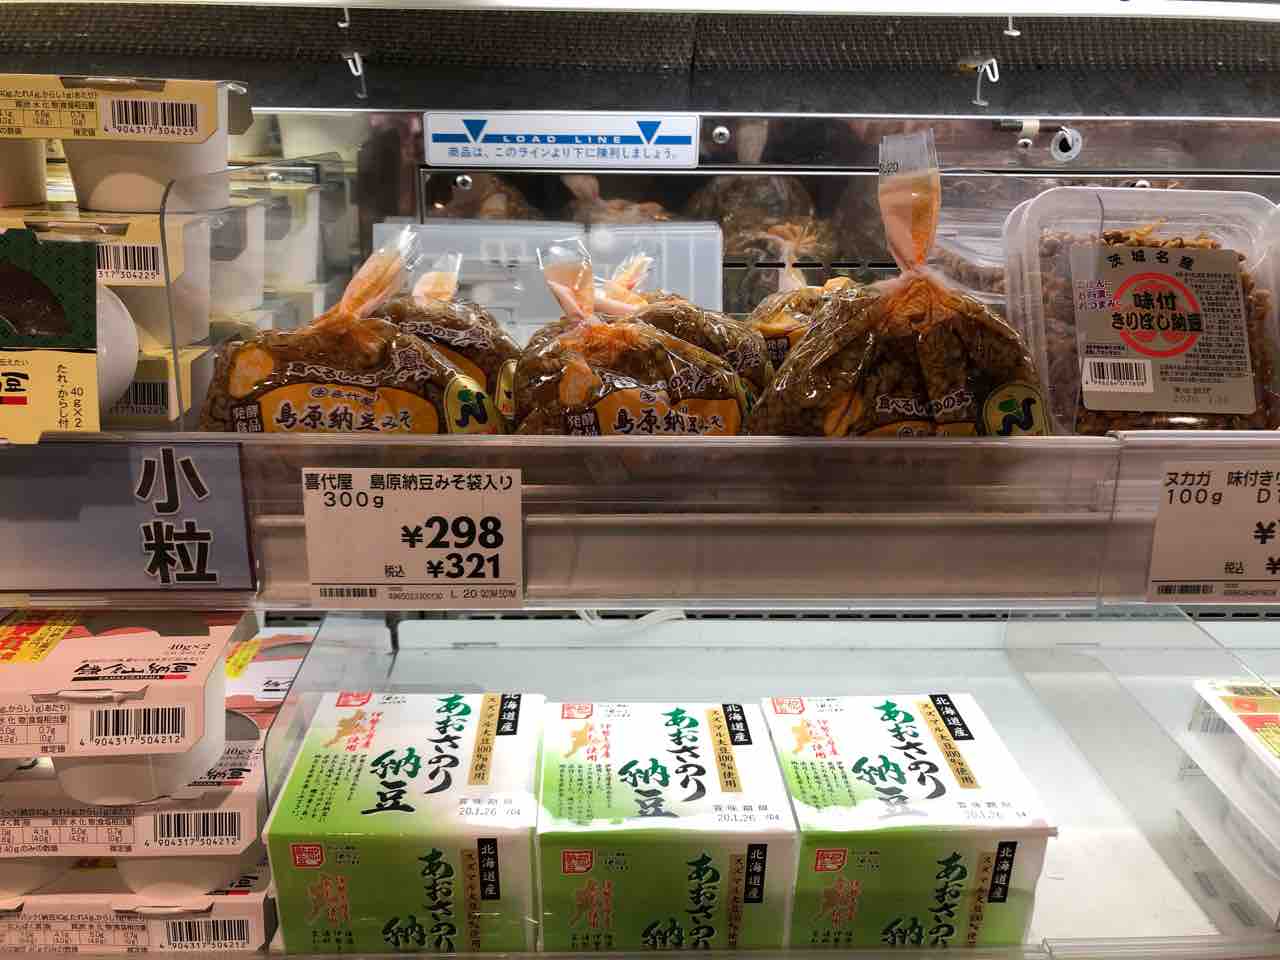 大阪じゃあちこちで見かけたけど 東京も このところ島原納豆みそを見ることが増えてきた 七転納豆